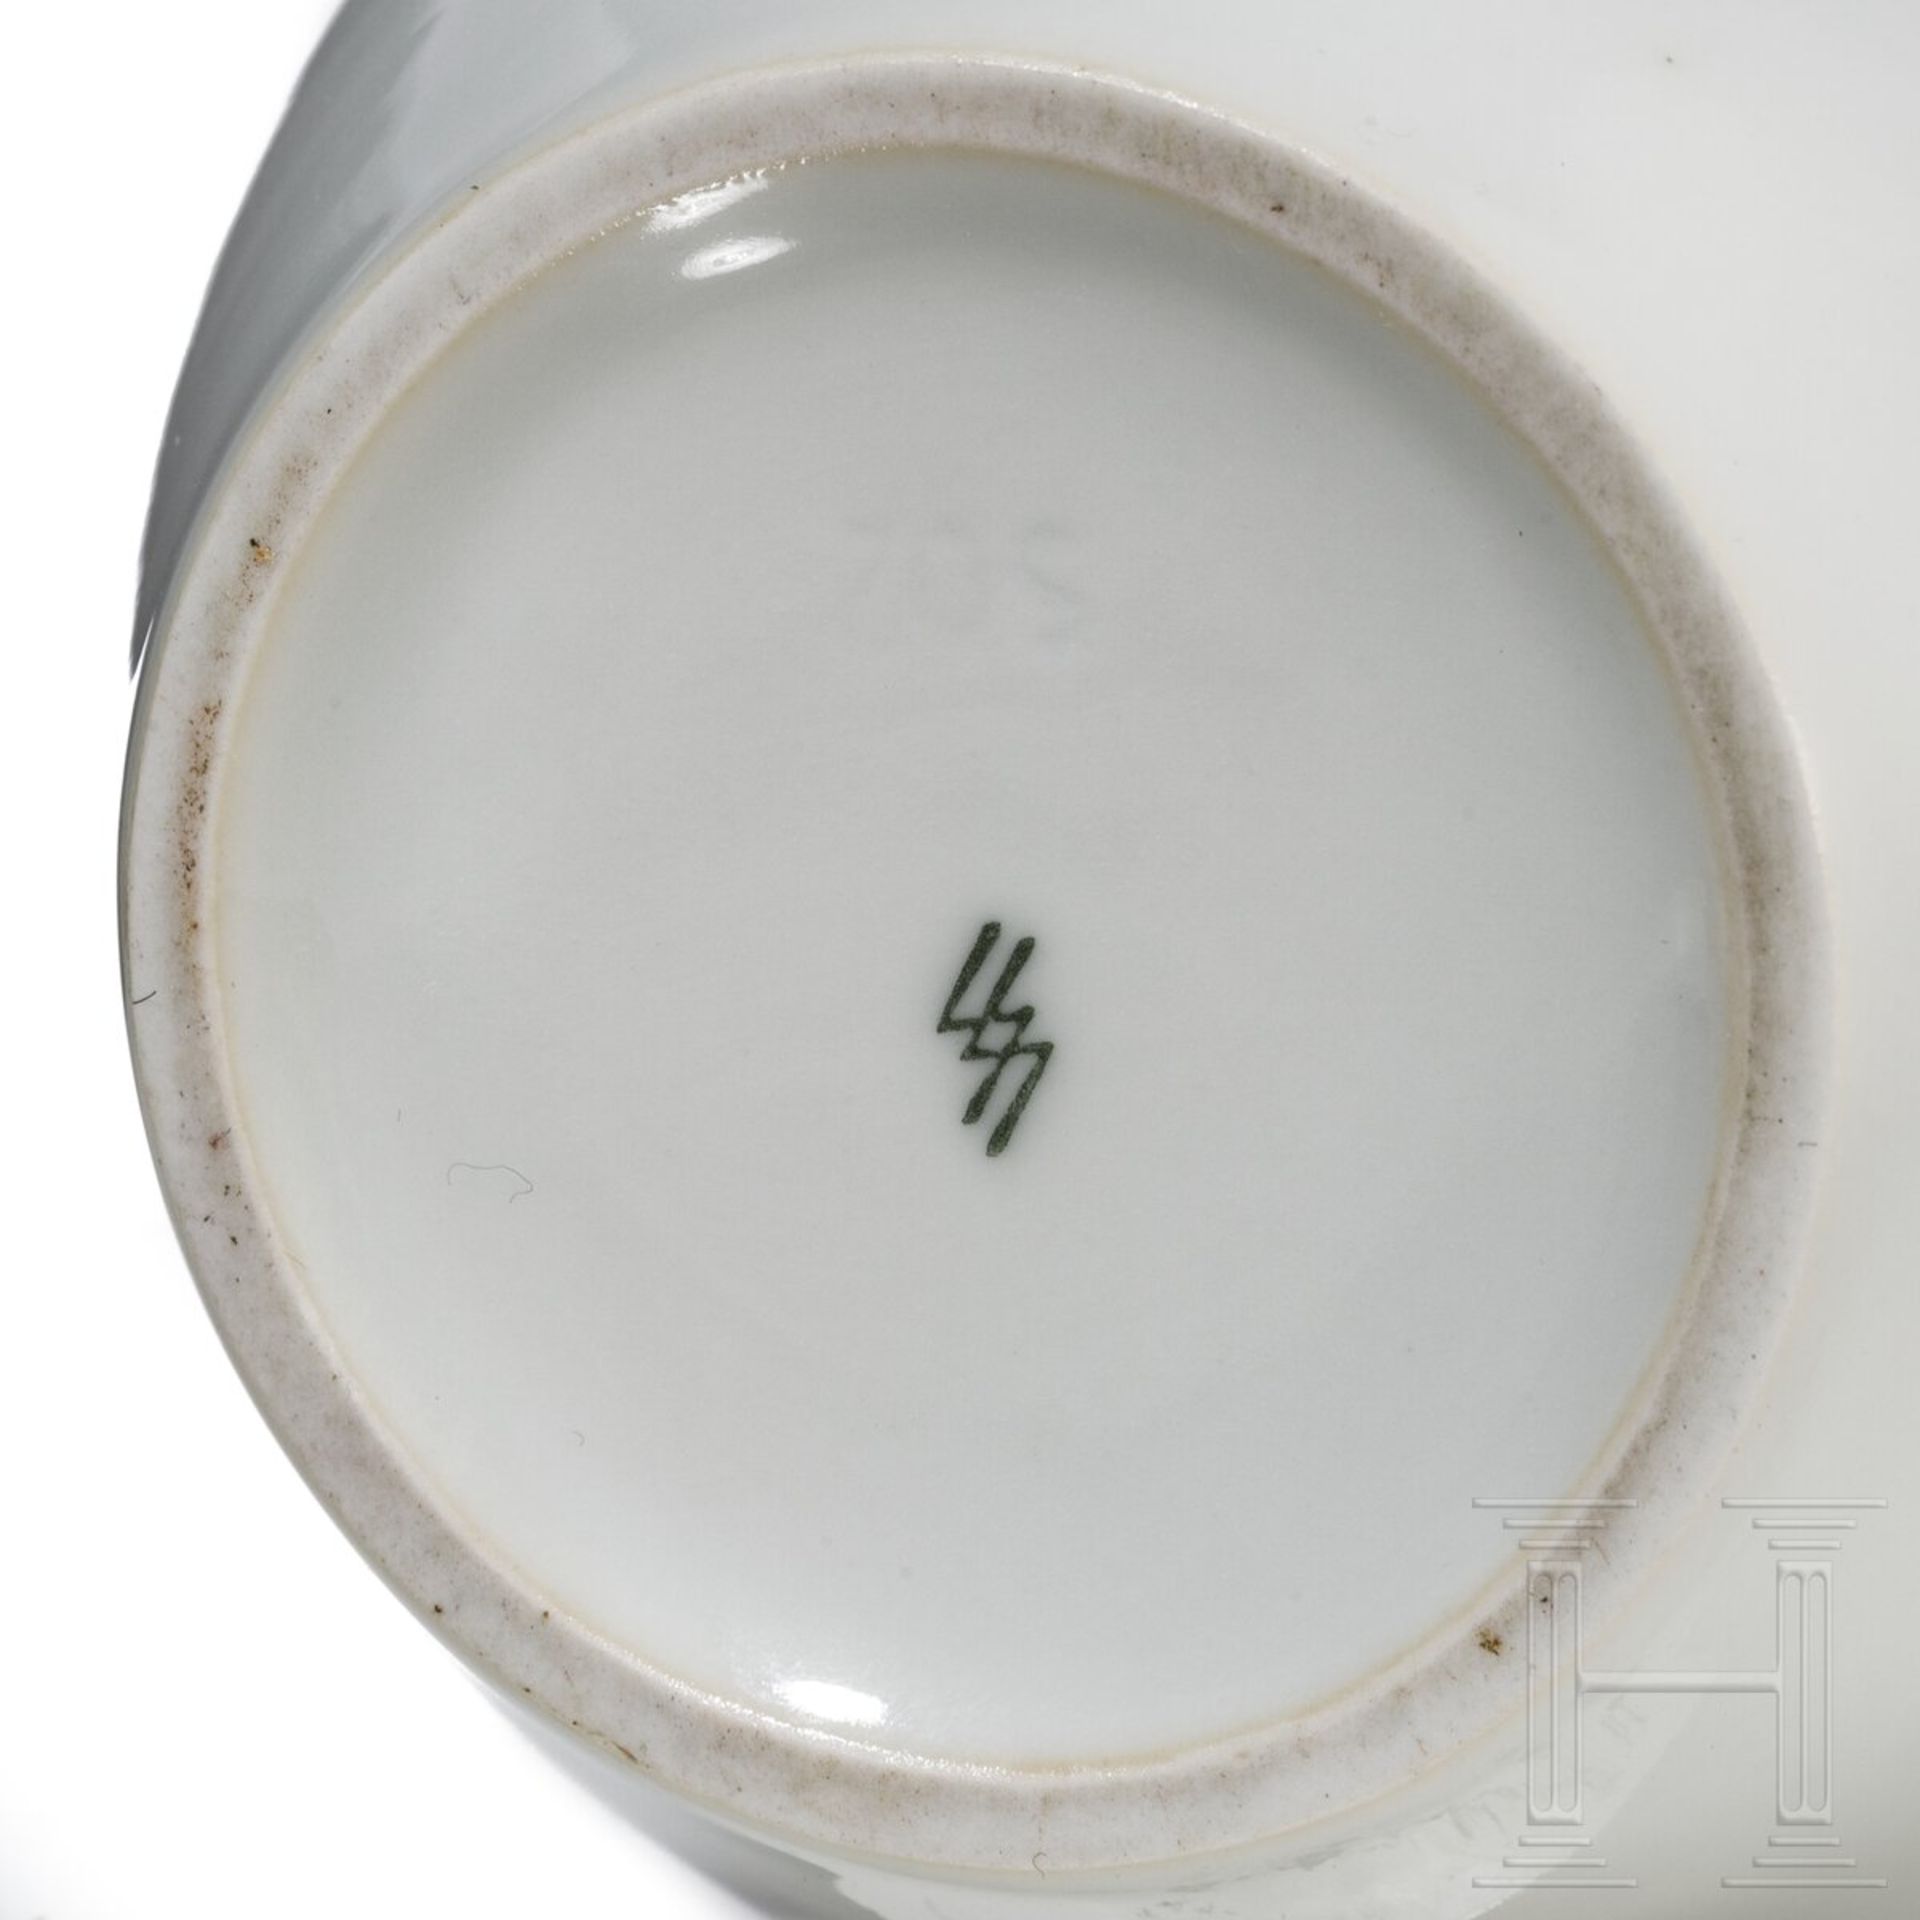 Porzellanmanufaktur Allach - Vase, Modellnummer 502 - Image 3 of 3